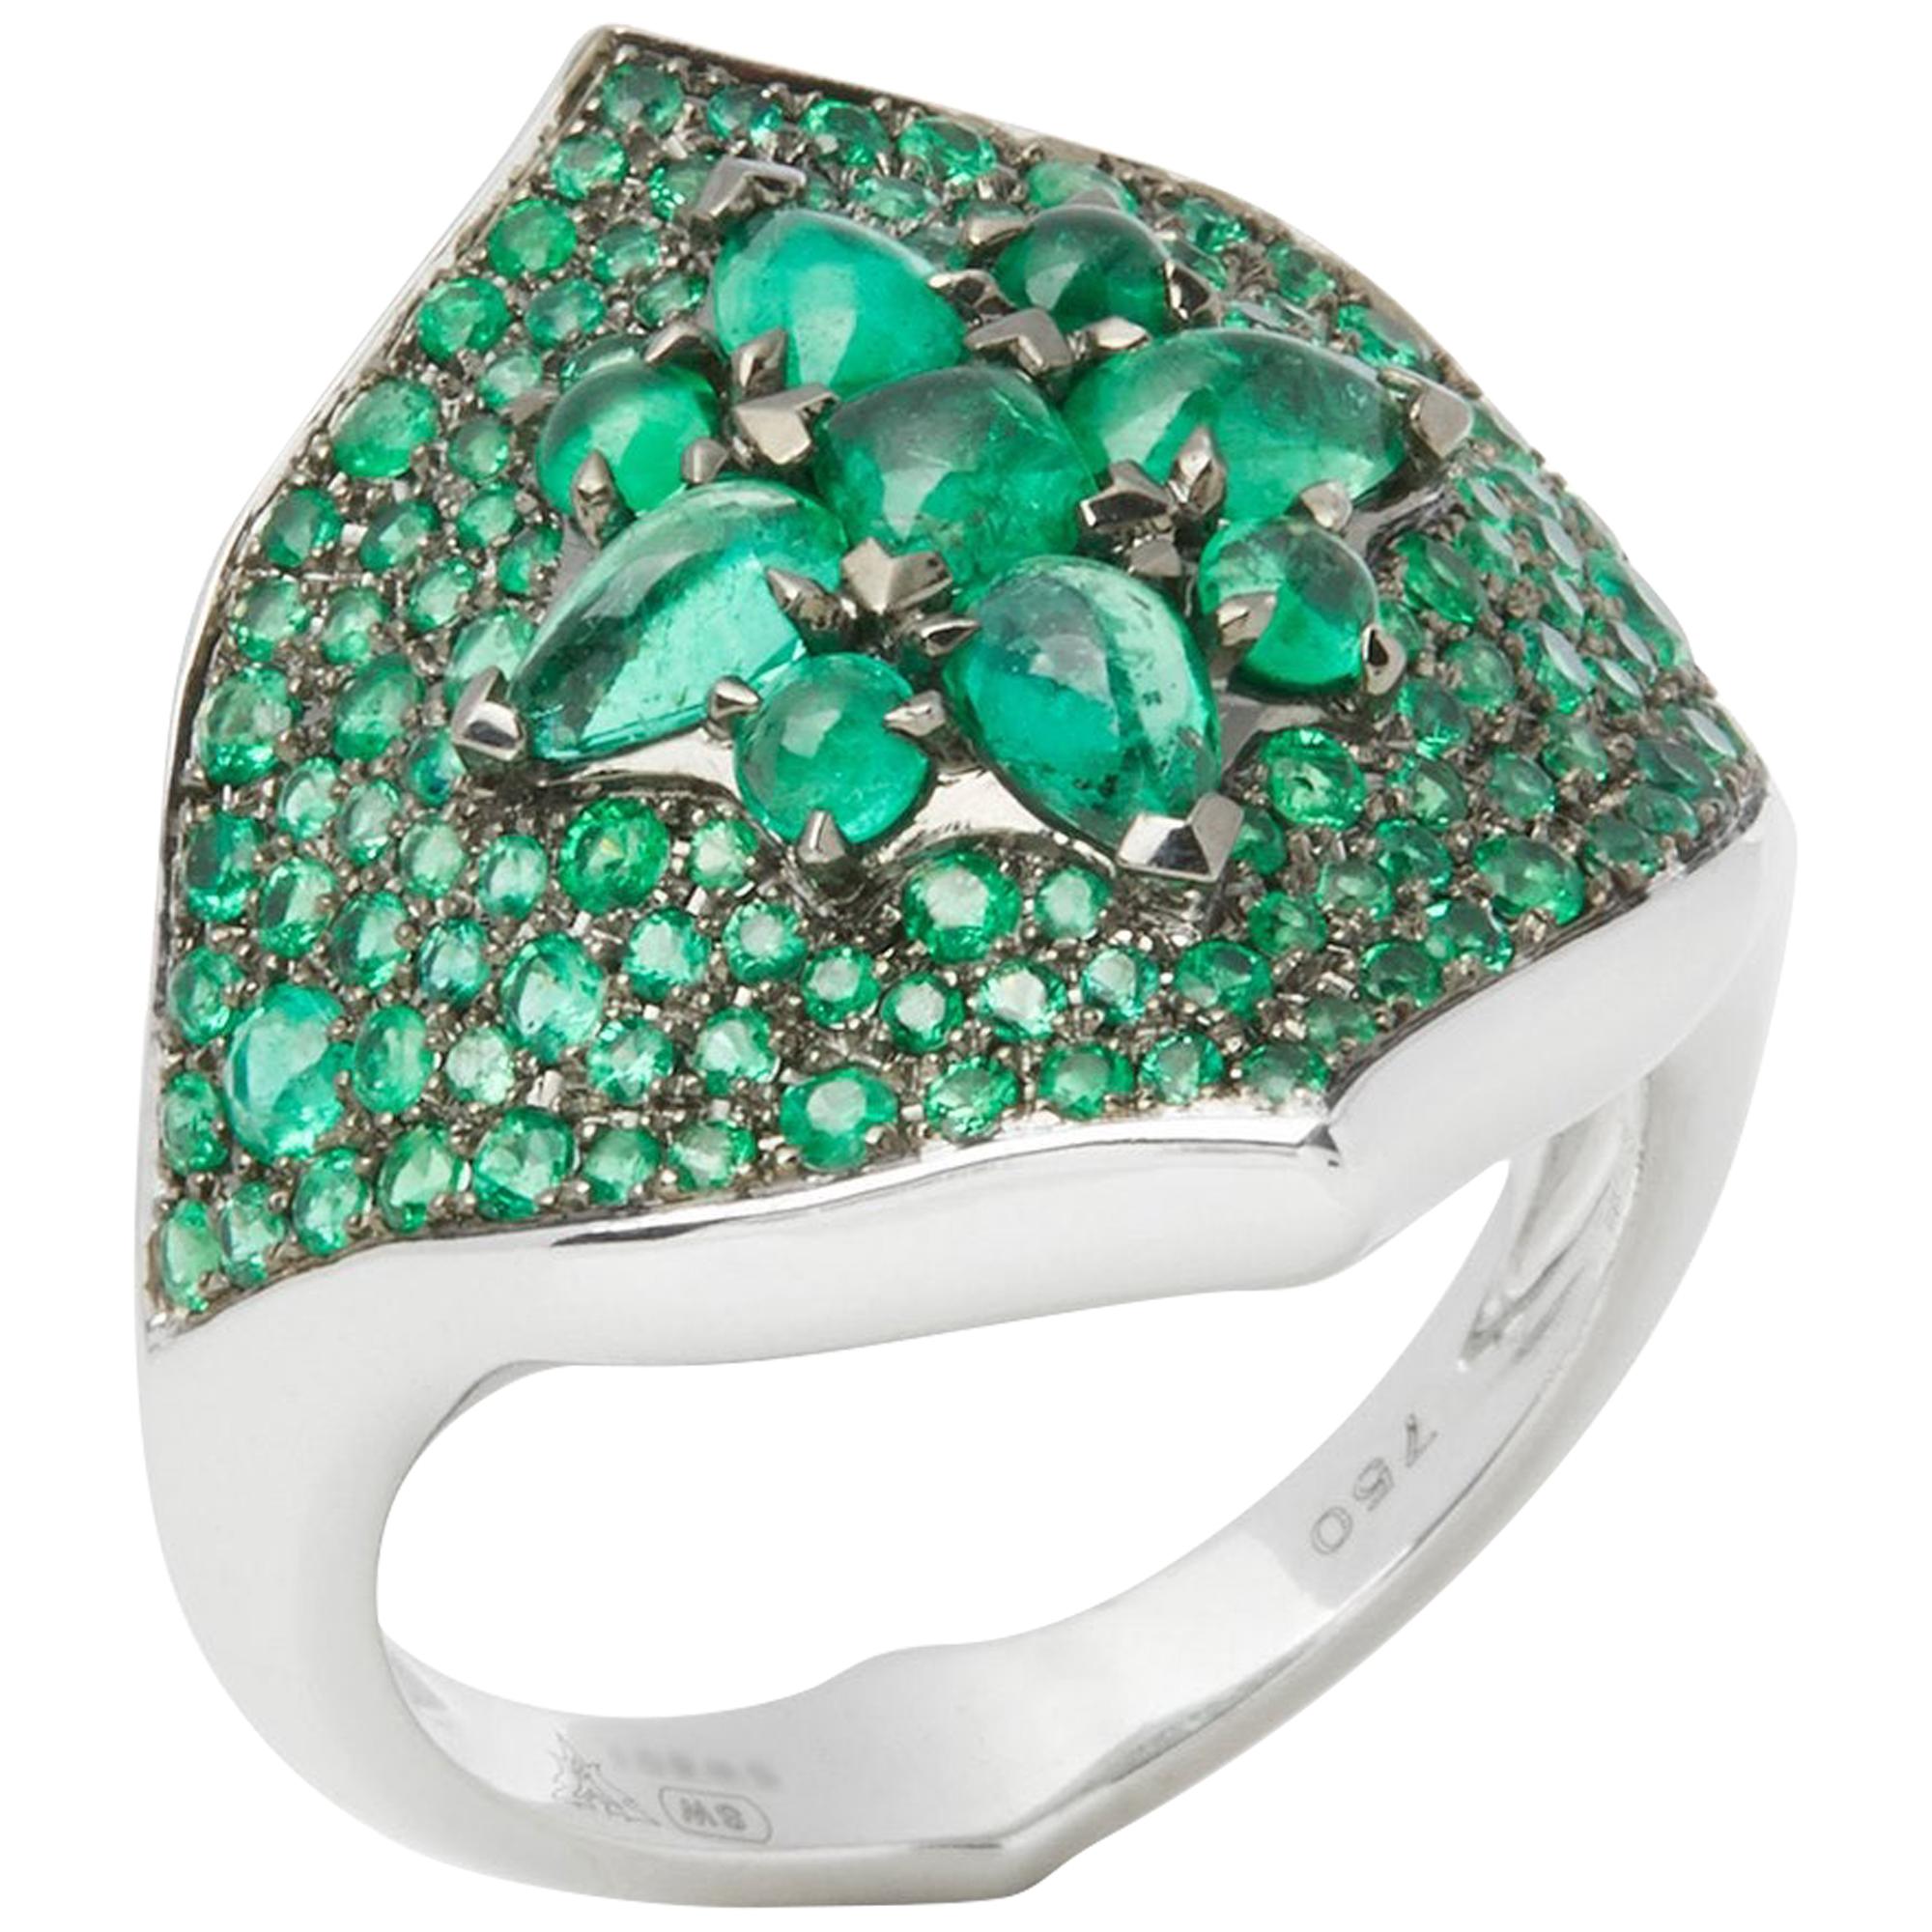 Stephen Webster Belle Époque 18 Carat White Gold Emerald Ring For Sale